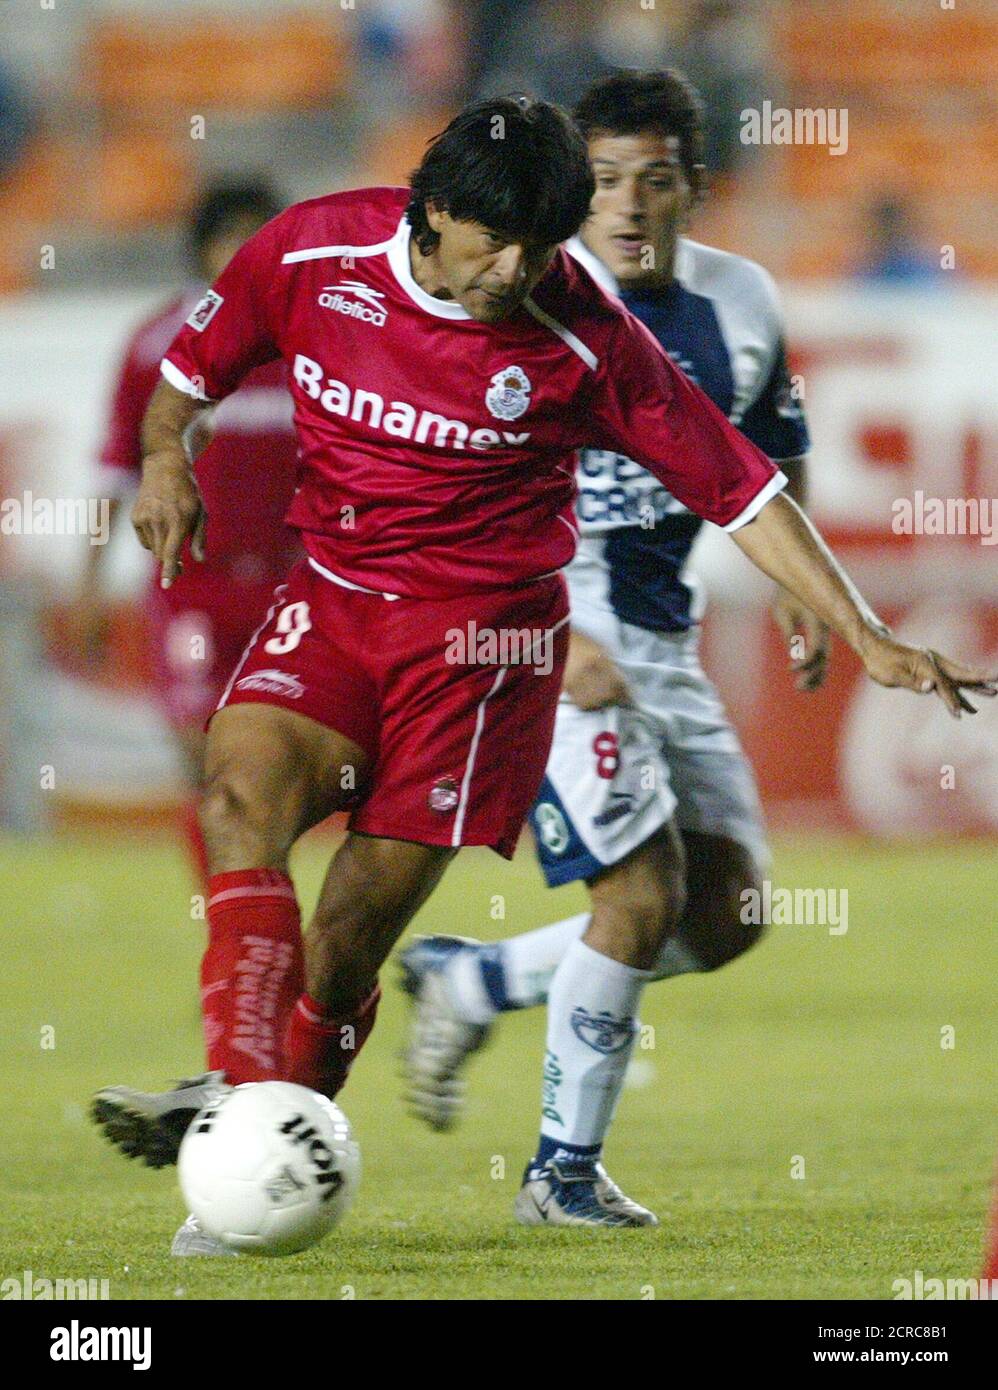 L'attaccante paraguaiano Jose Saturnino Cardozo (L) di Toluca calcia il  pallone dopo Diego Alejandro Rivero di Pachuca durante la seconda metà della  partita di calcio del campionato messicano allo stadio Hidalgo a